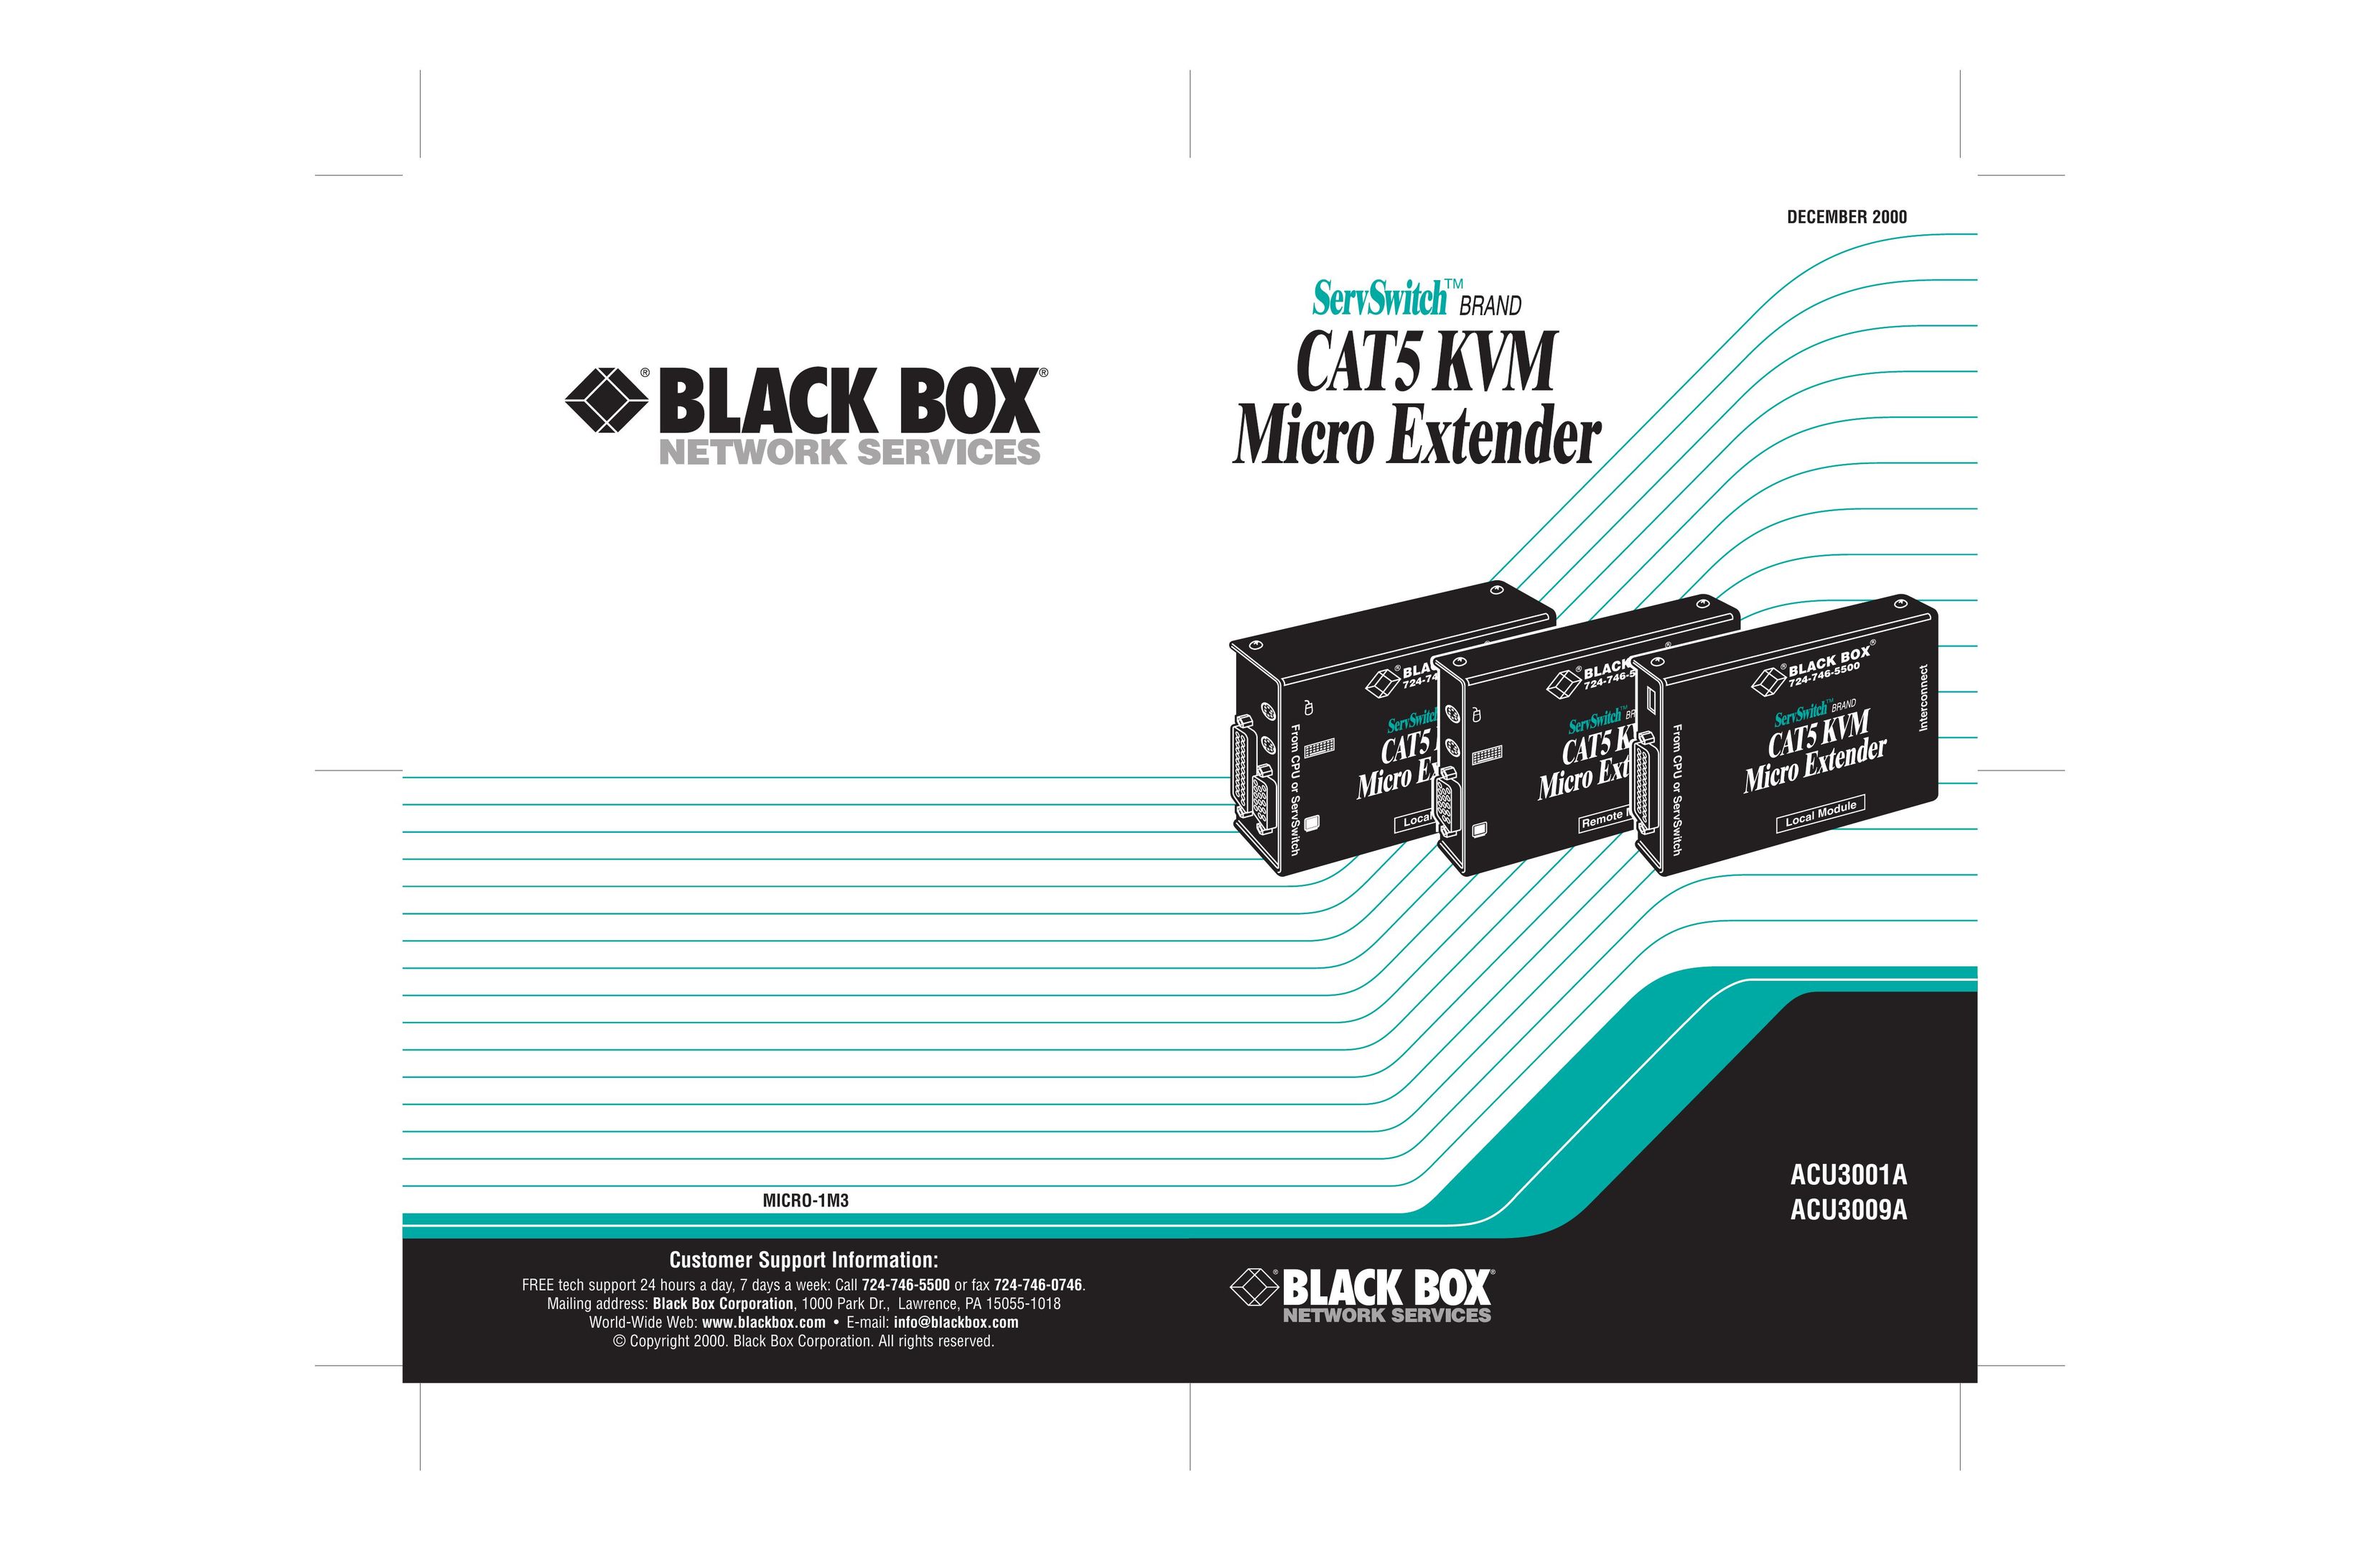 Black Box ACU3009A Computer Accessories User Manual